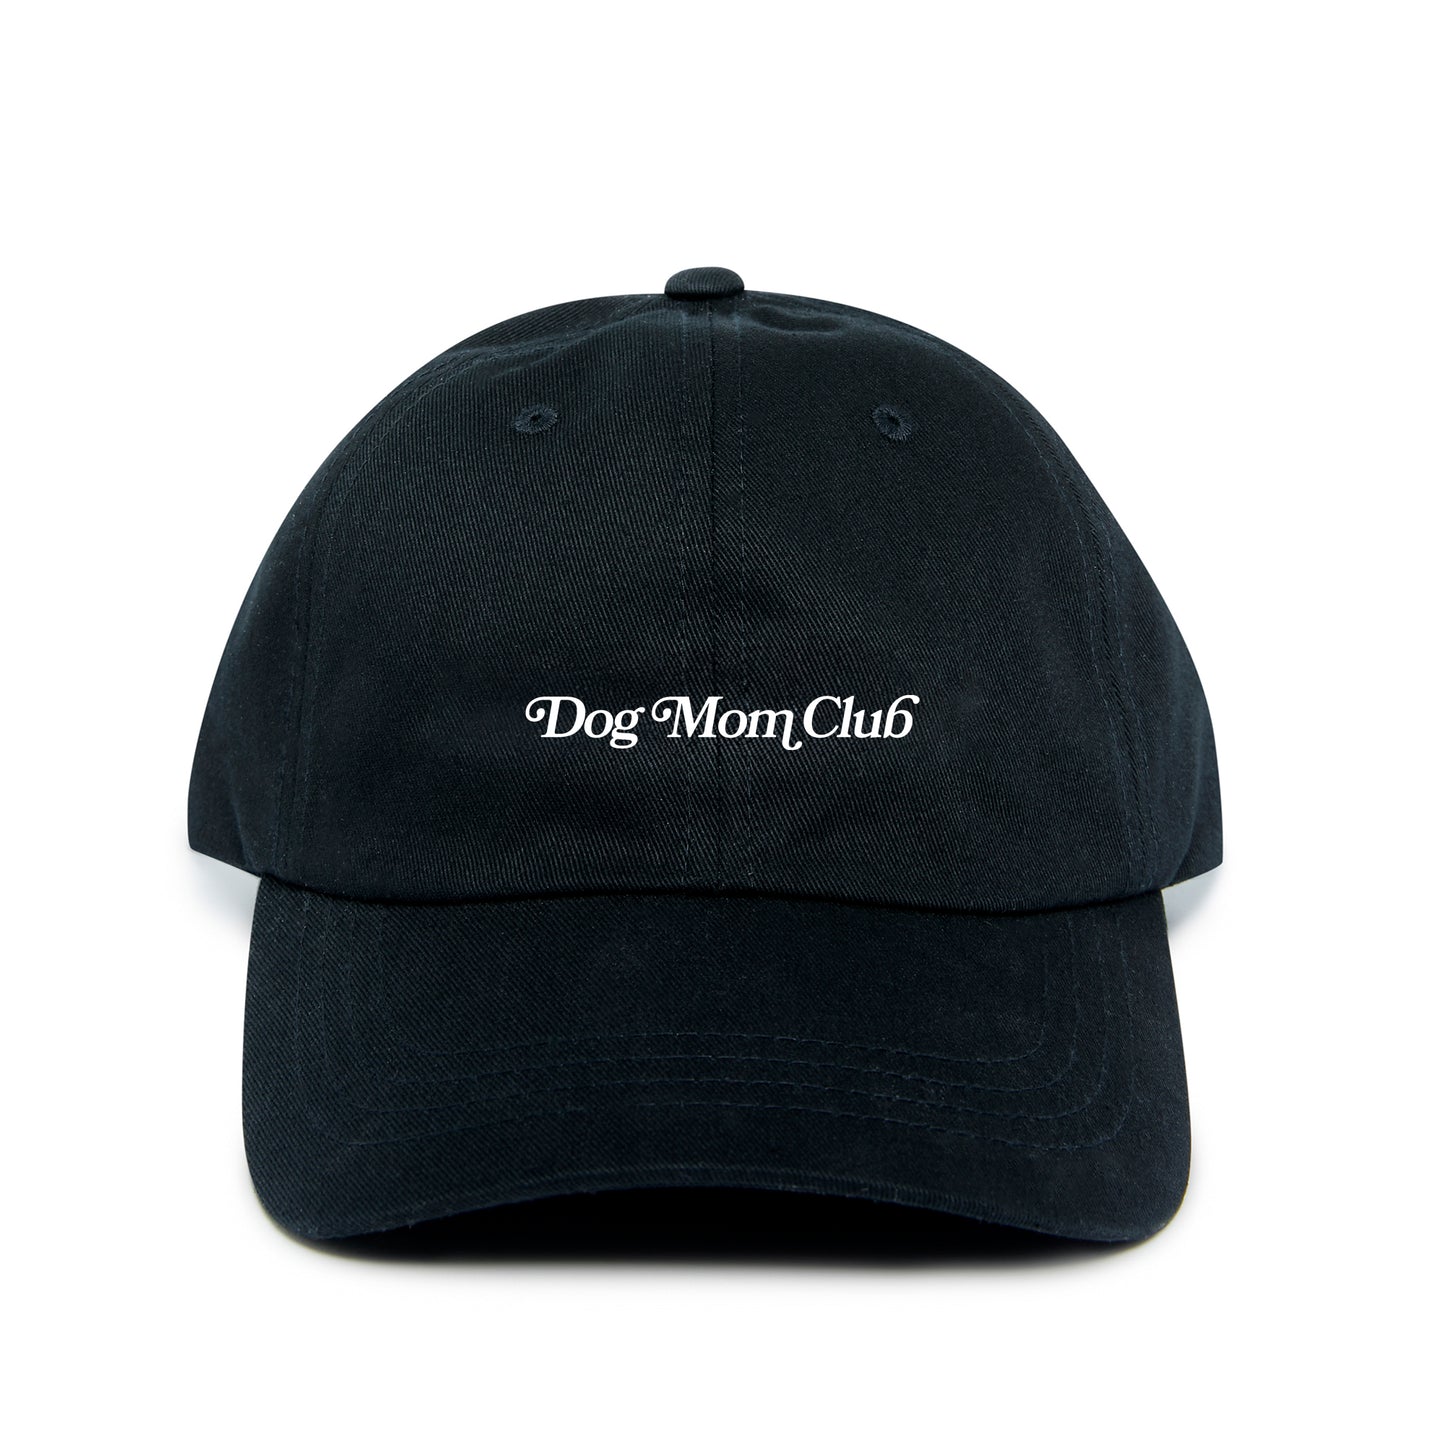 Dog Mom Club Hat - Black